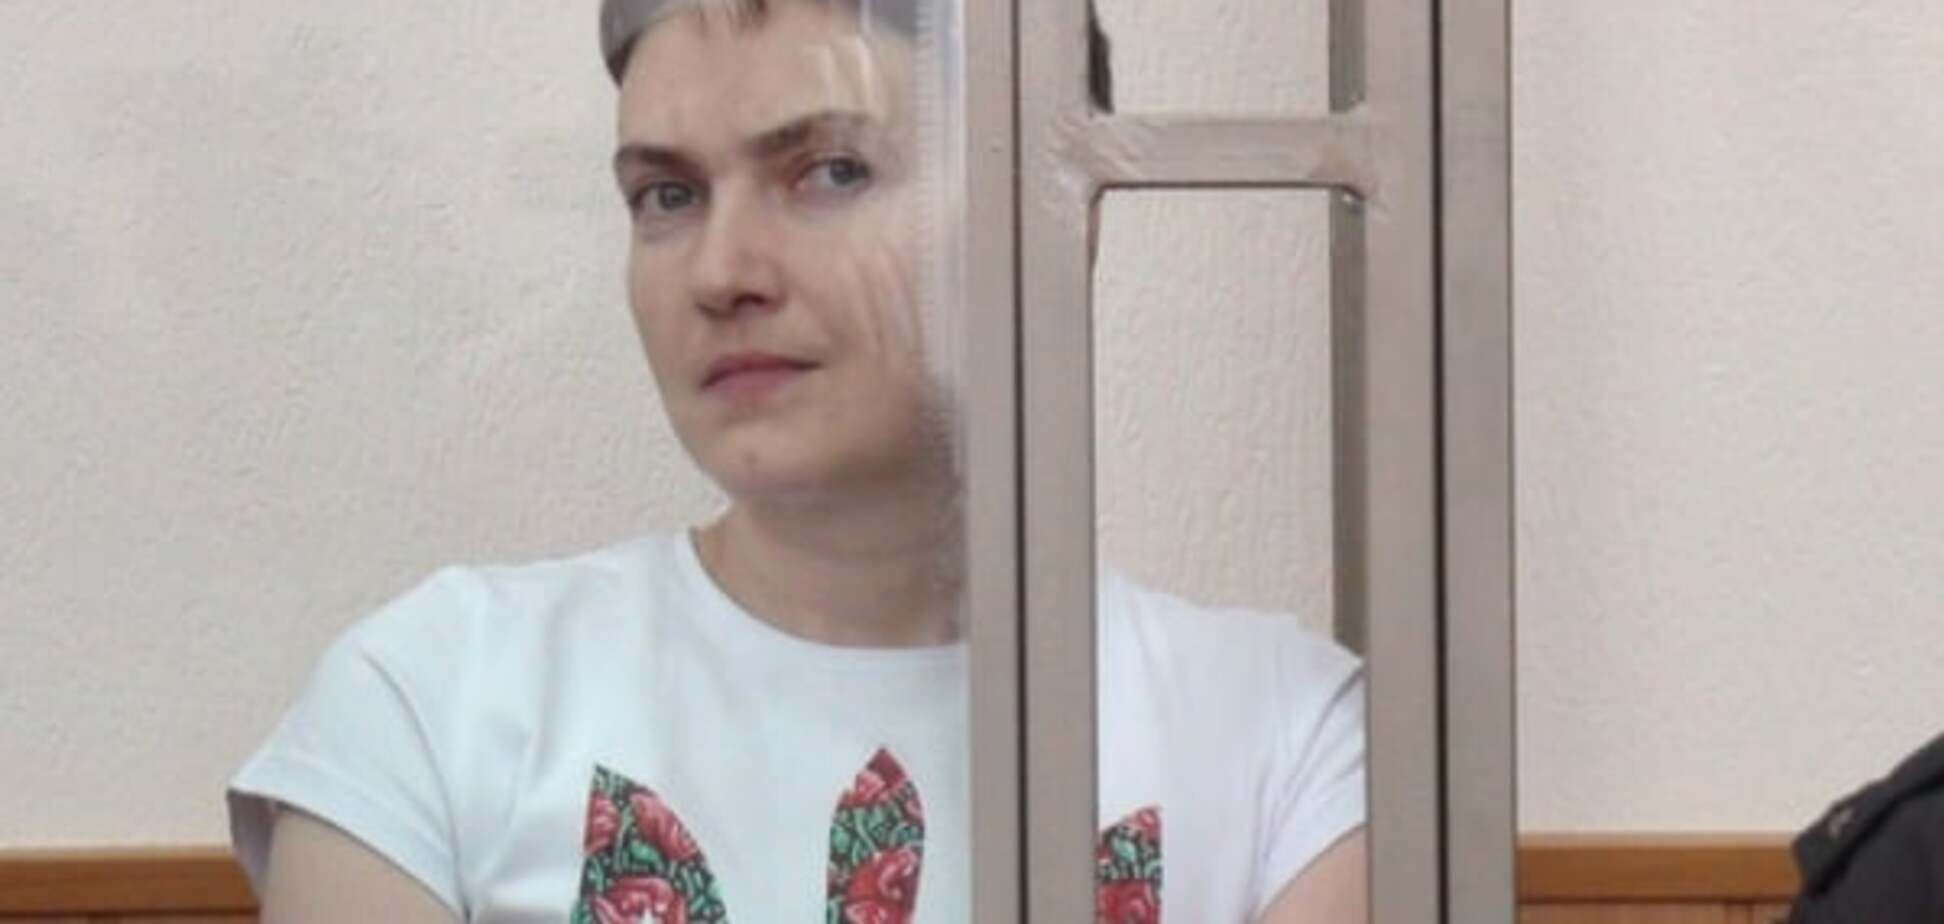 Організм Савченко перестав сприймати воду - адвокат